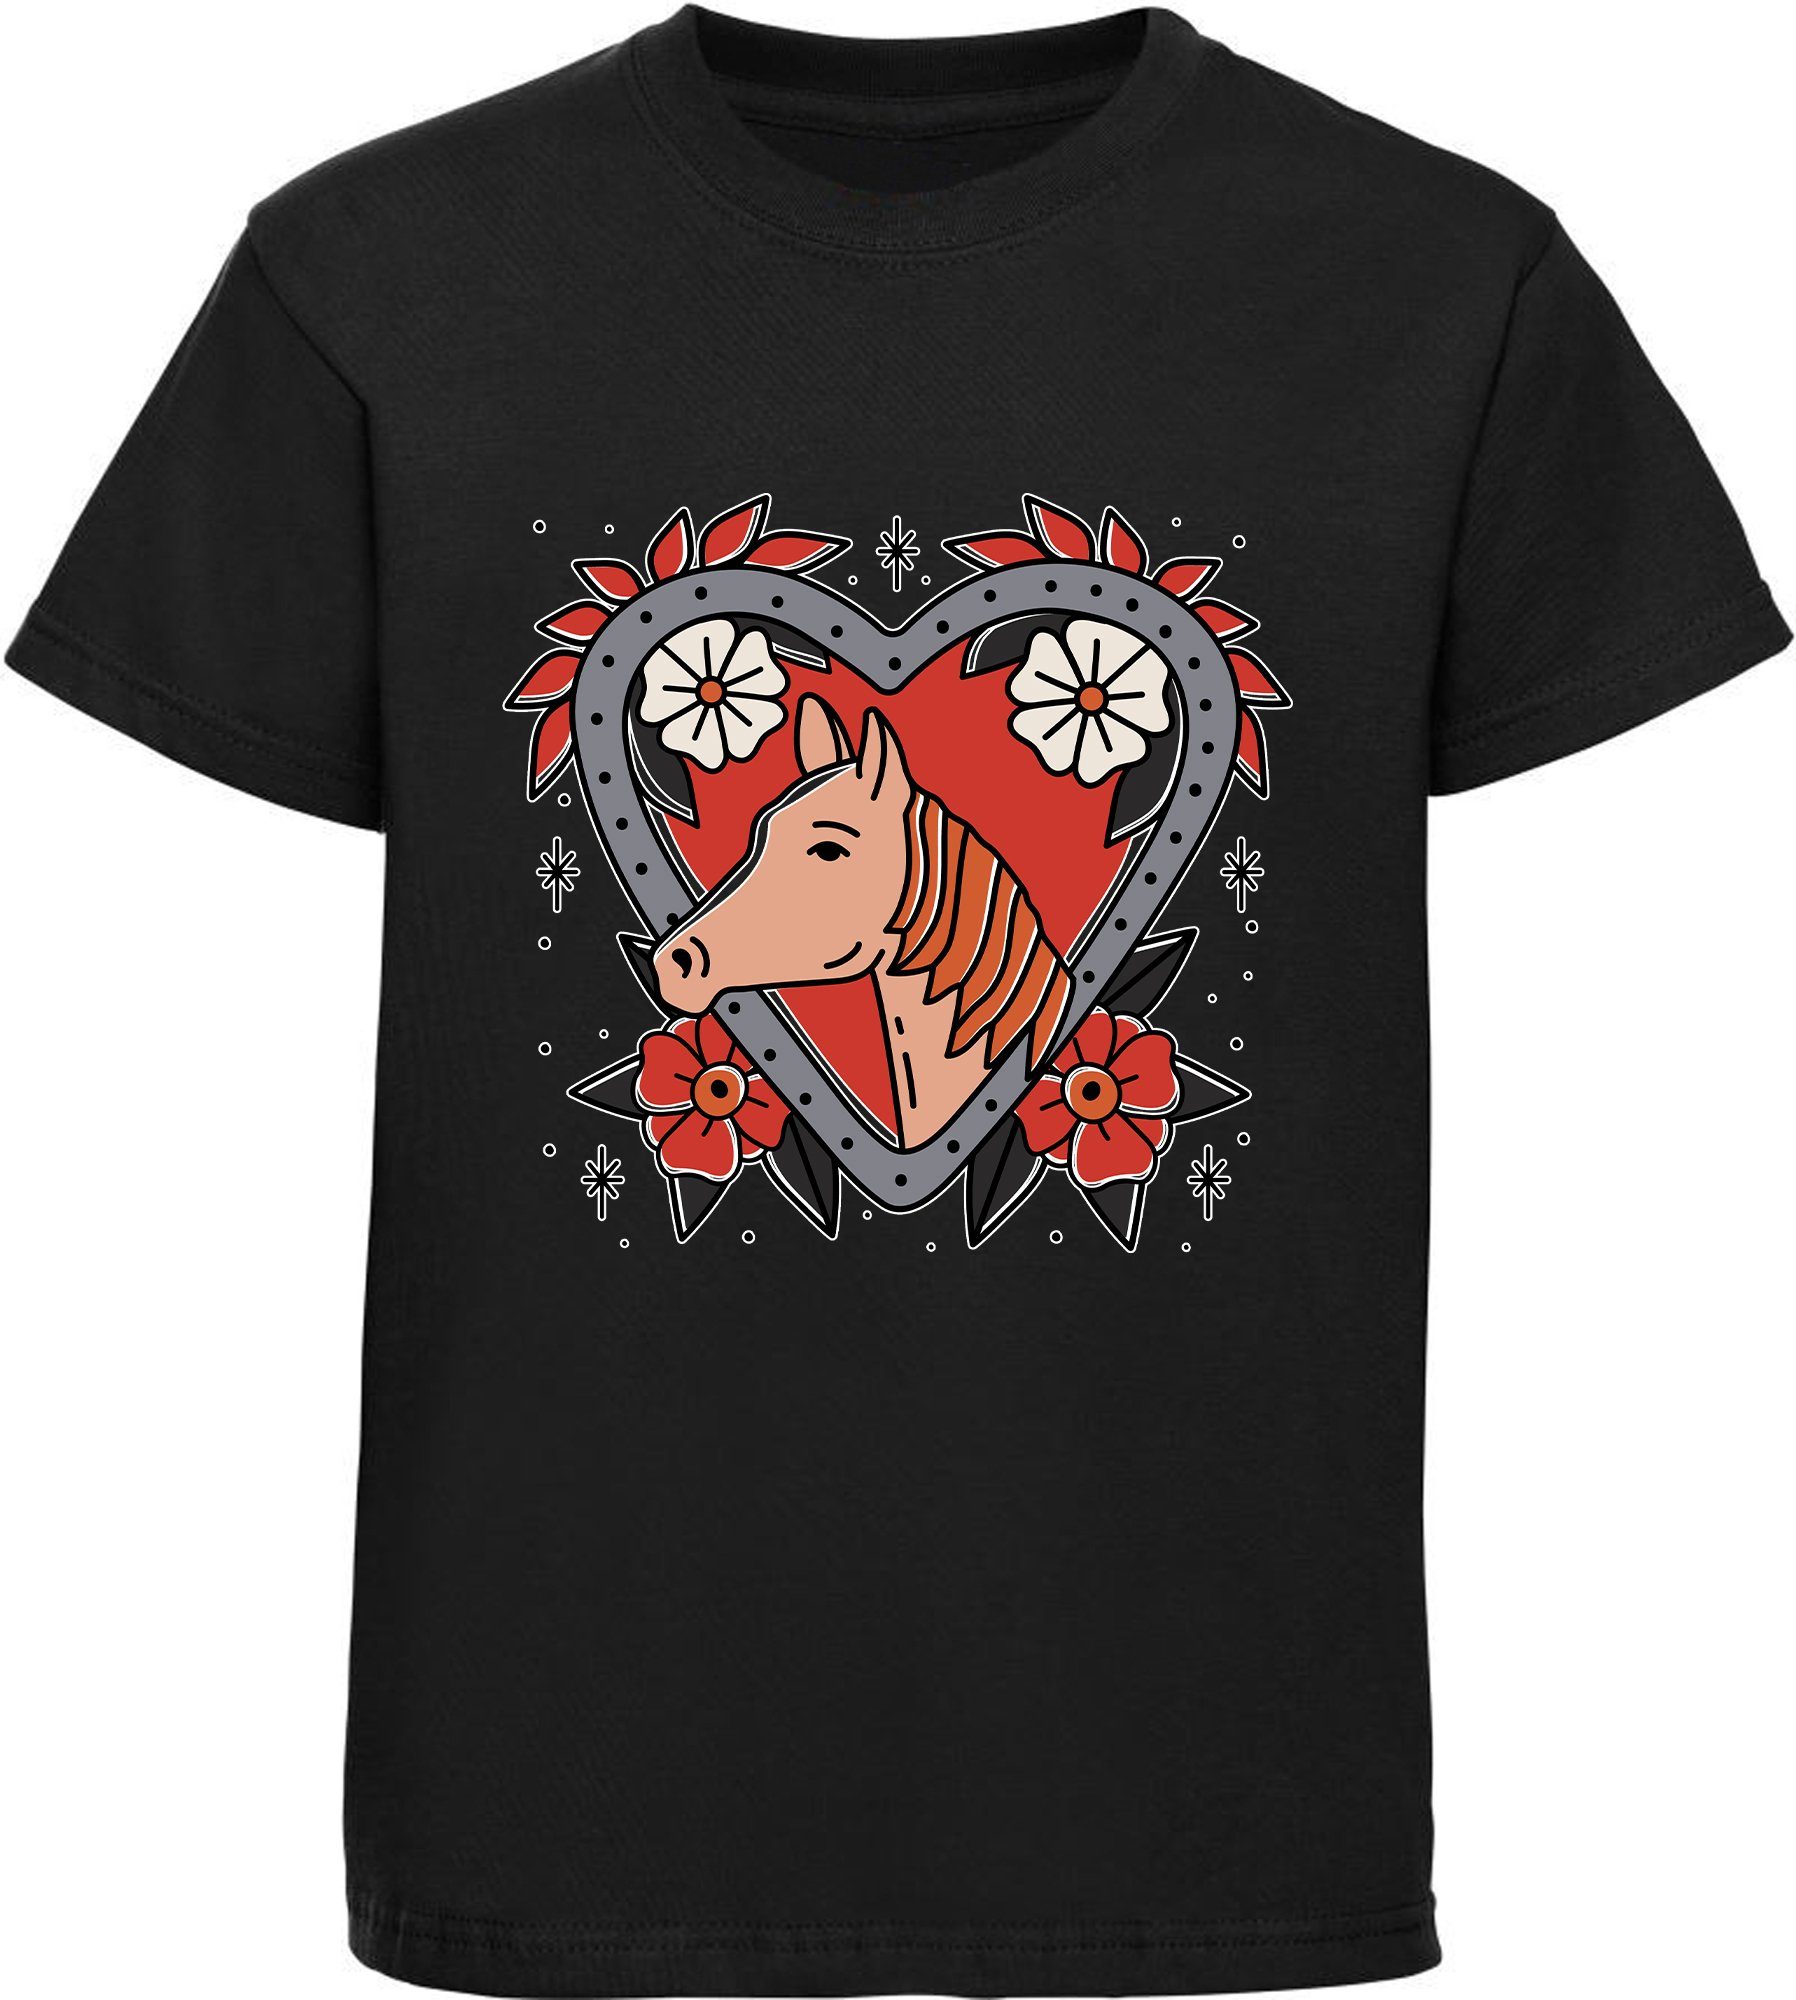 MyDesign24 Print-Shirt bedrucktes Mädchen T-Shirt mit Pferd im Blumenherz Baumwollshirt mit Aufdruck, weiß, schwarz, rot, rosa, i137